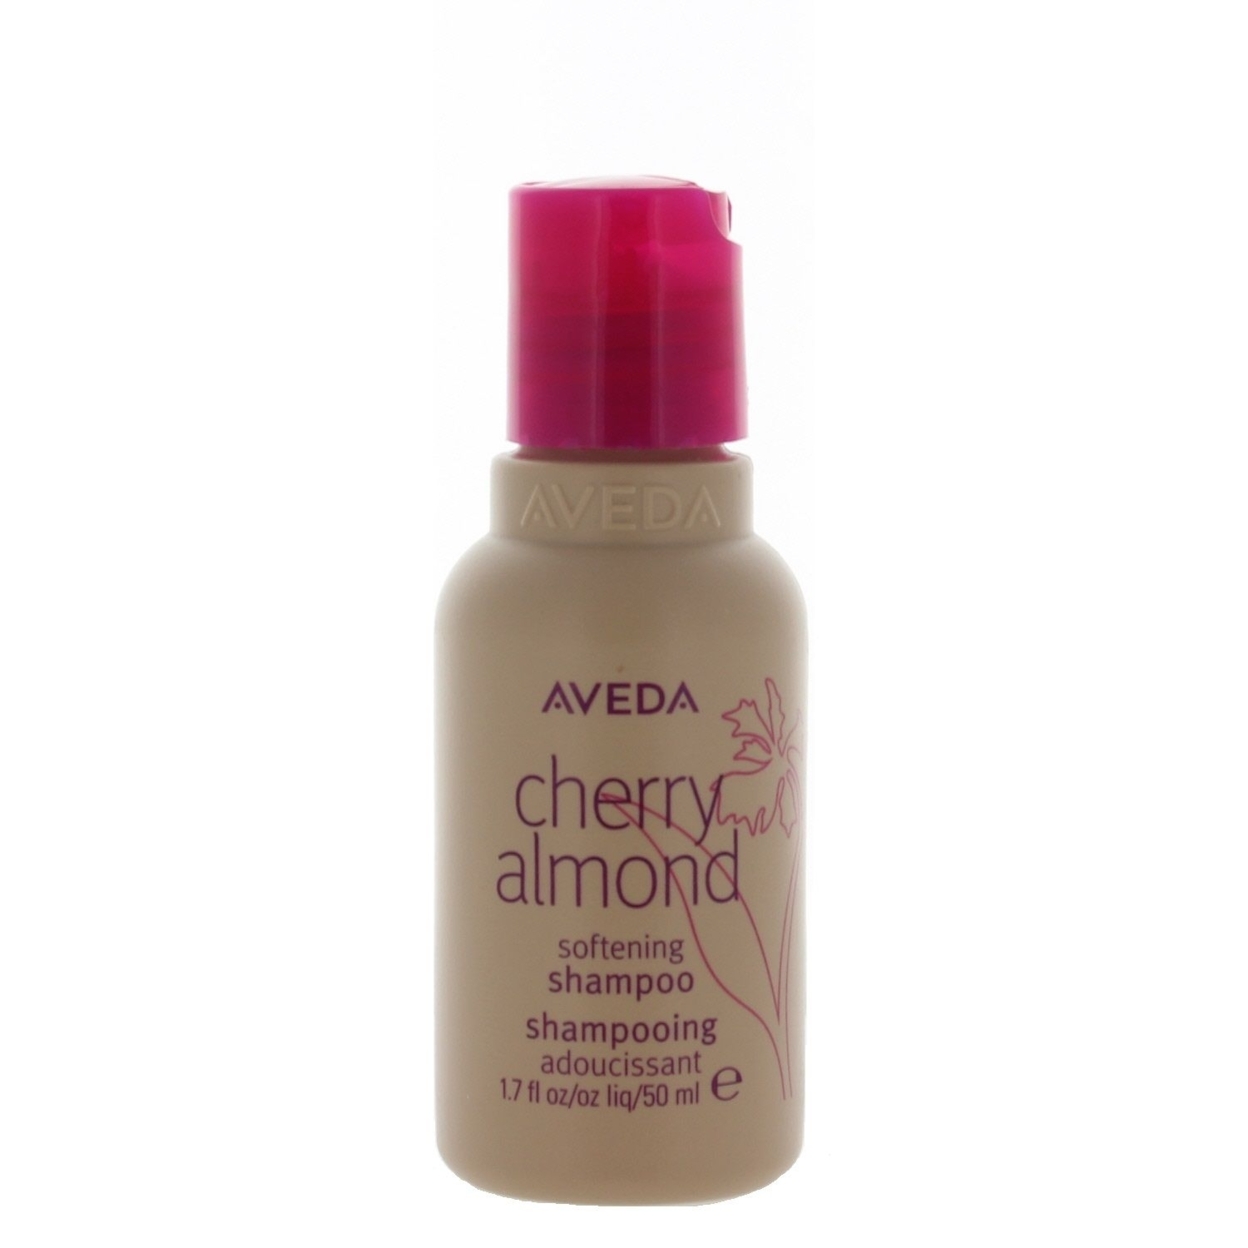 Aveda Cherry Almond Softening Shampoo 1.7oz/50ml